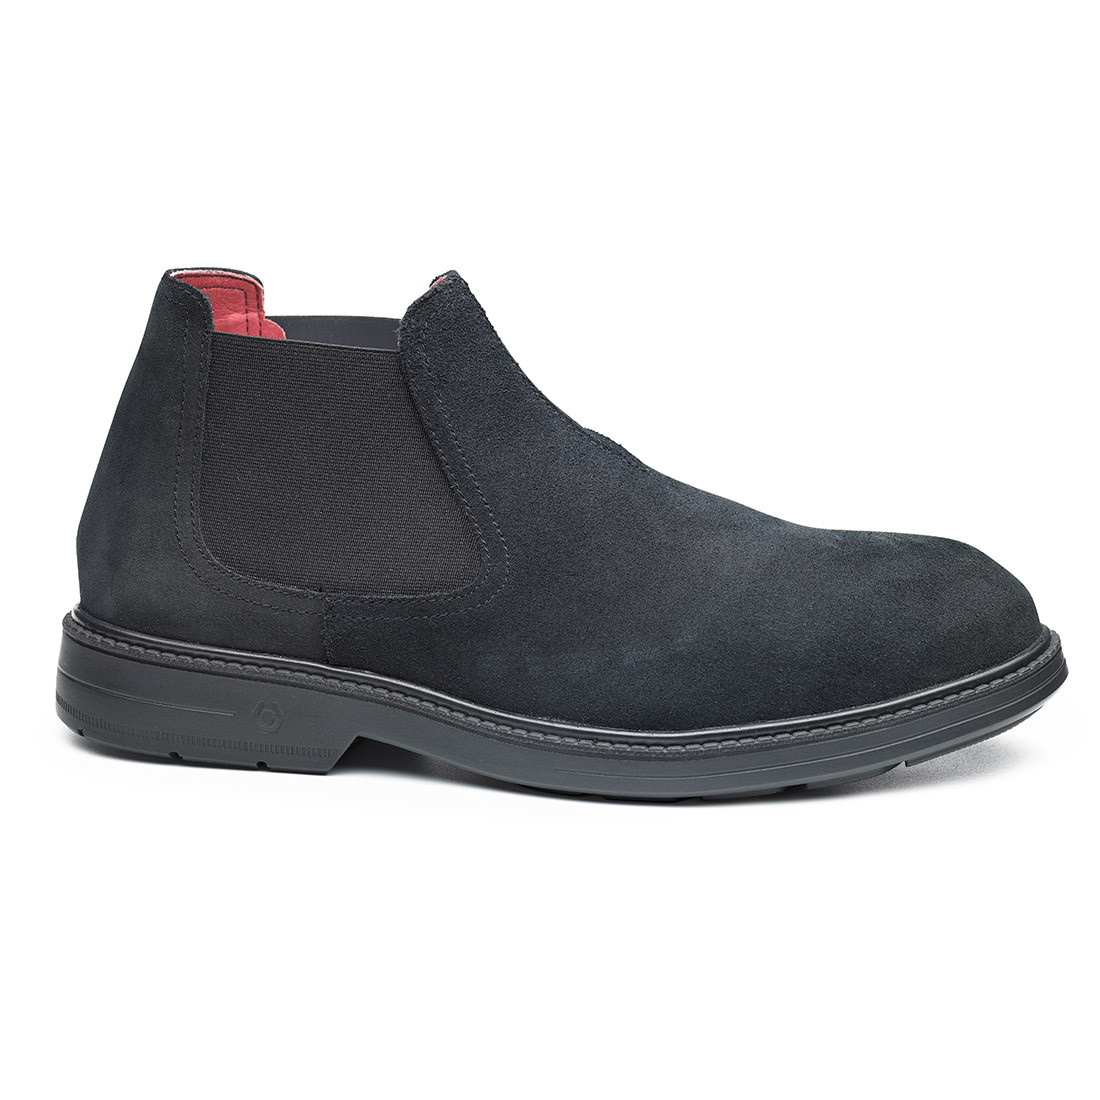 Universe Shoe S3 ESD SRC - Les chaussures de protection